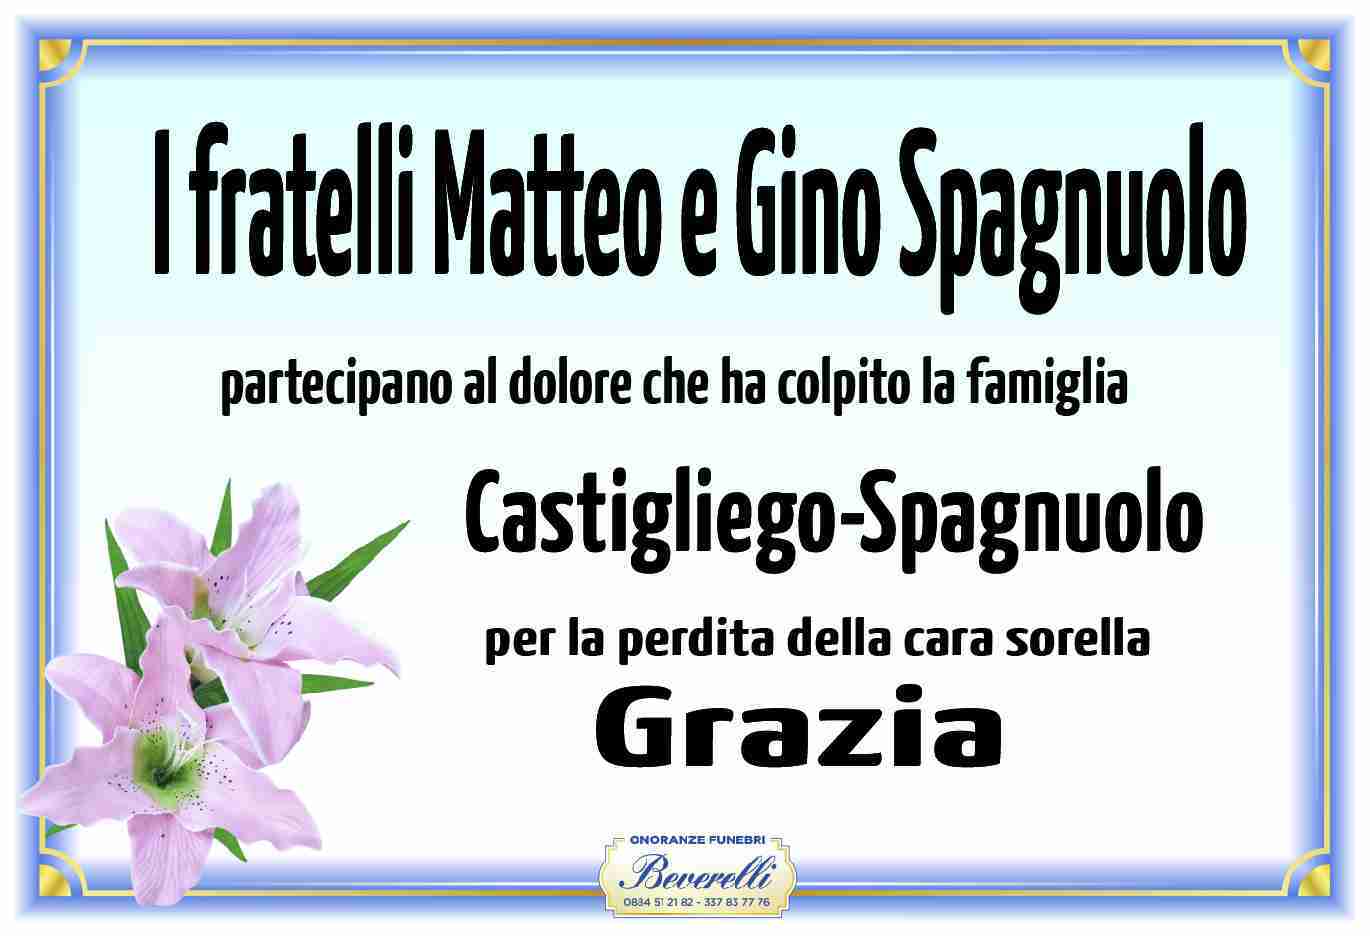 Grazia Spagnuolo